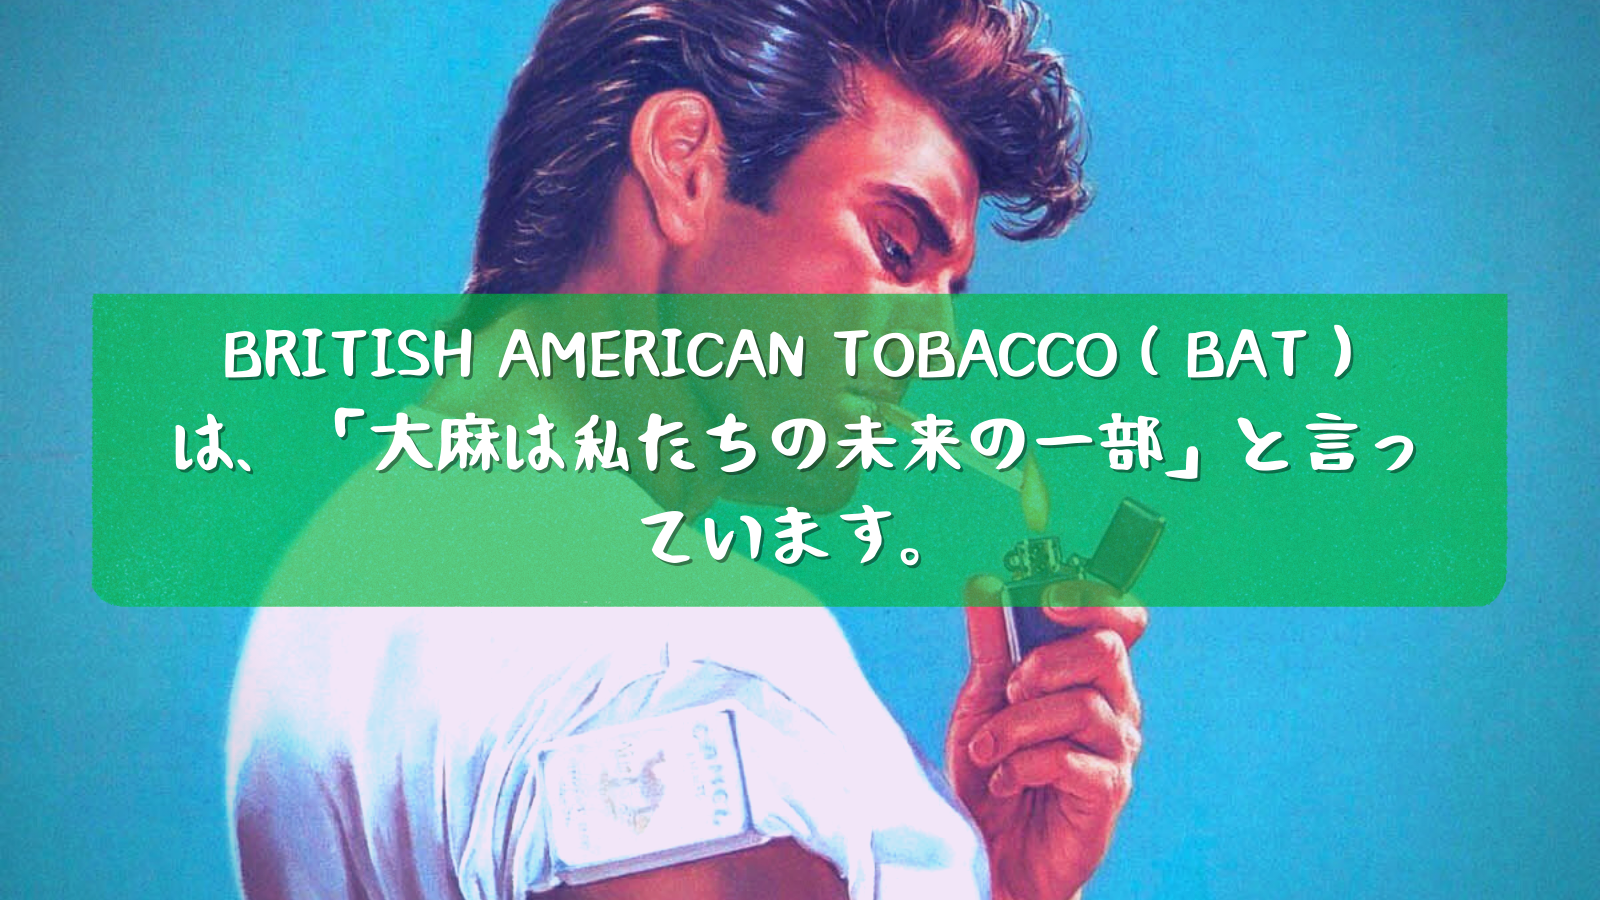 ブリティッシュ・アメリカン・タバコ（BAT）は、「 は、「大麻は私たちの未来の一部」と言っています。